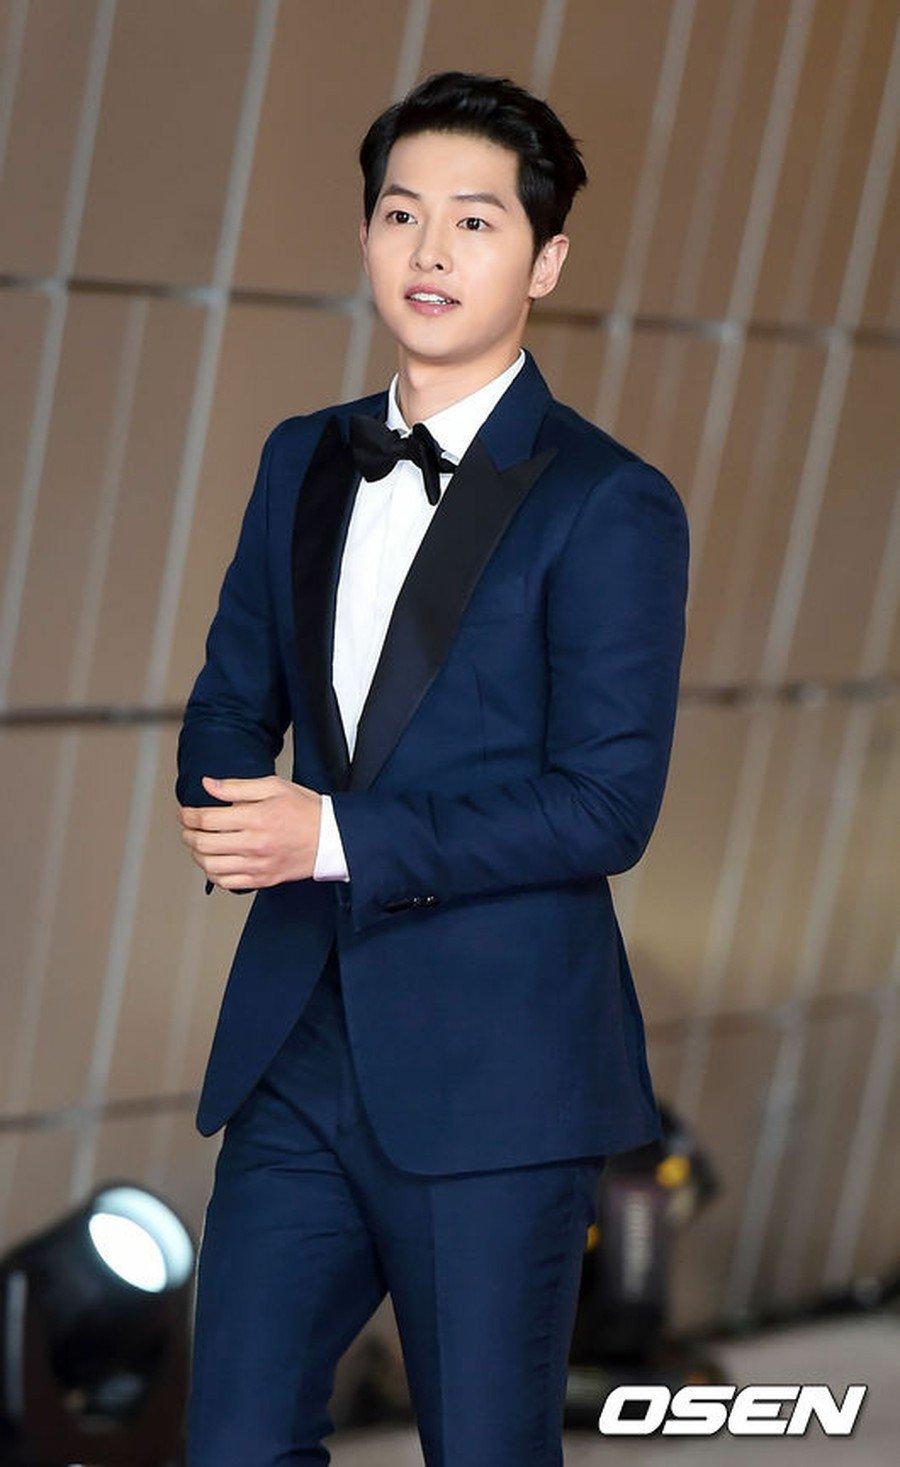 Song Joong Ki là một trong những mỹ nam Hàn Quốc diện suit đẹp nhất theo tạp chí "25ans" của Nhật Bản bình chọn. Sở hữu chiều cao 1m78, ngôi sao sinh năm 1985 mang tới sự đối lập thú vị giữa hình thể nam tính với khuôn mặt búng ra sữa trong bộ suit. (Nguồn: Internet)